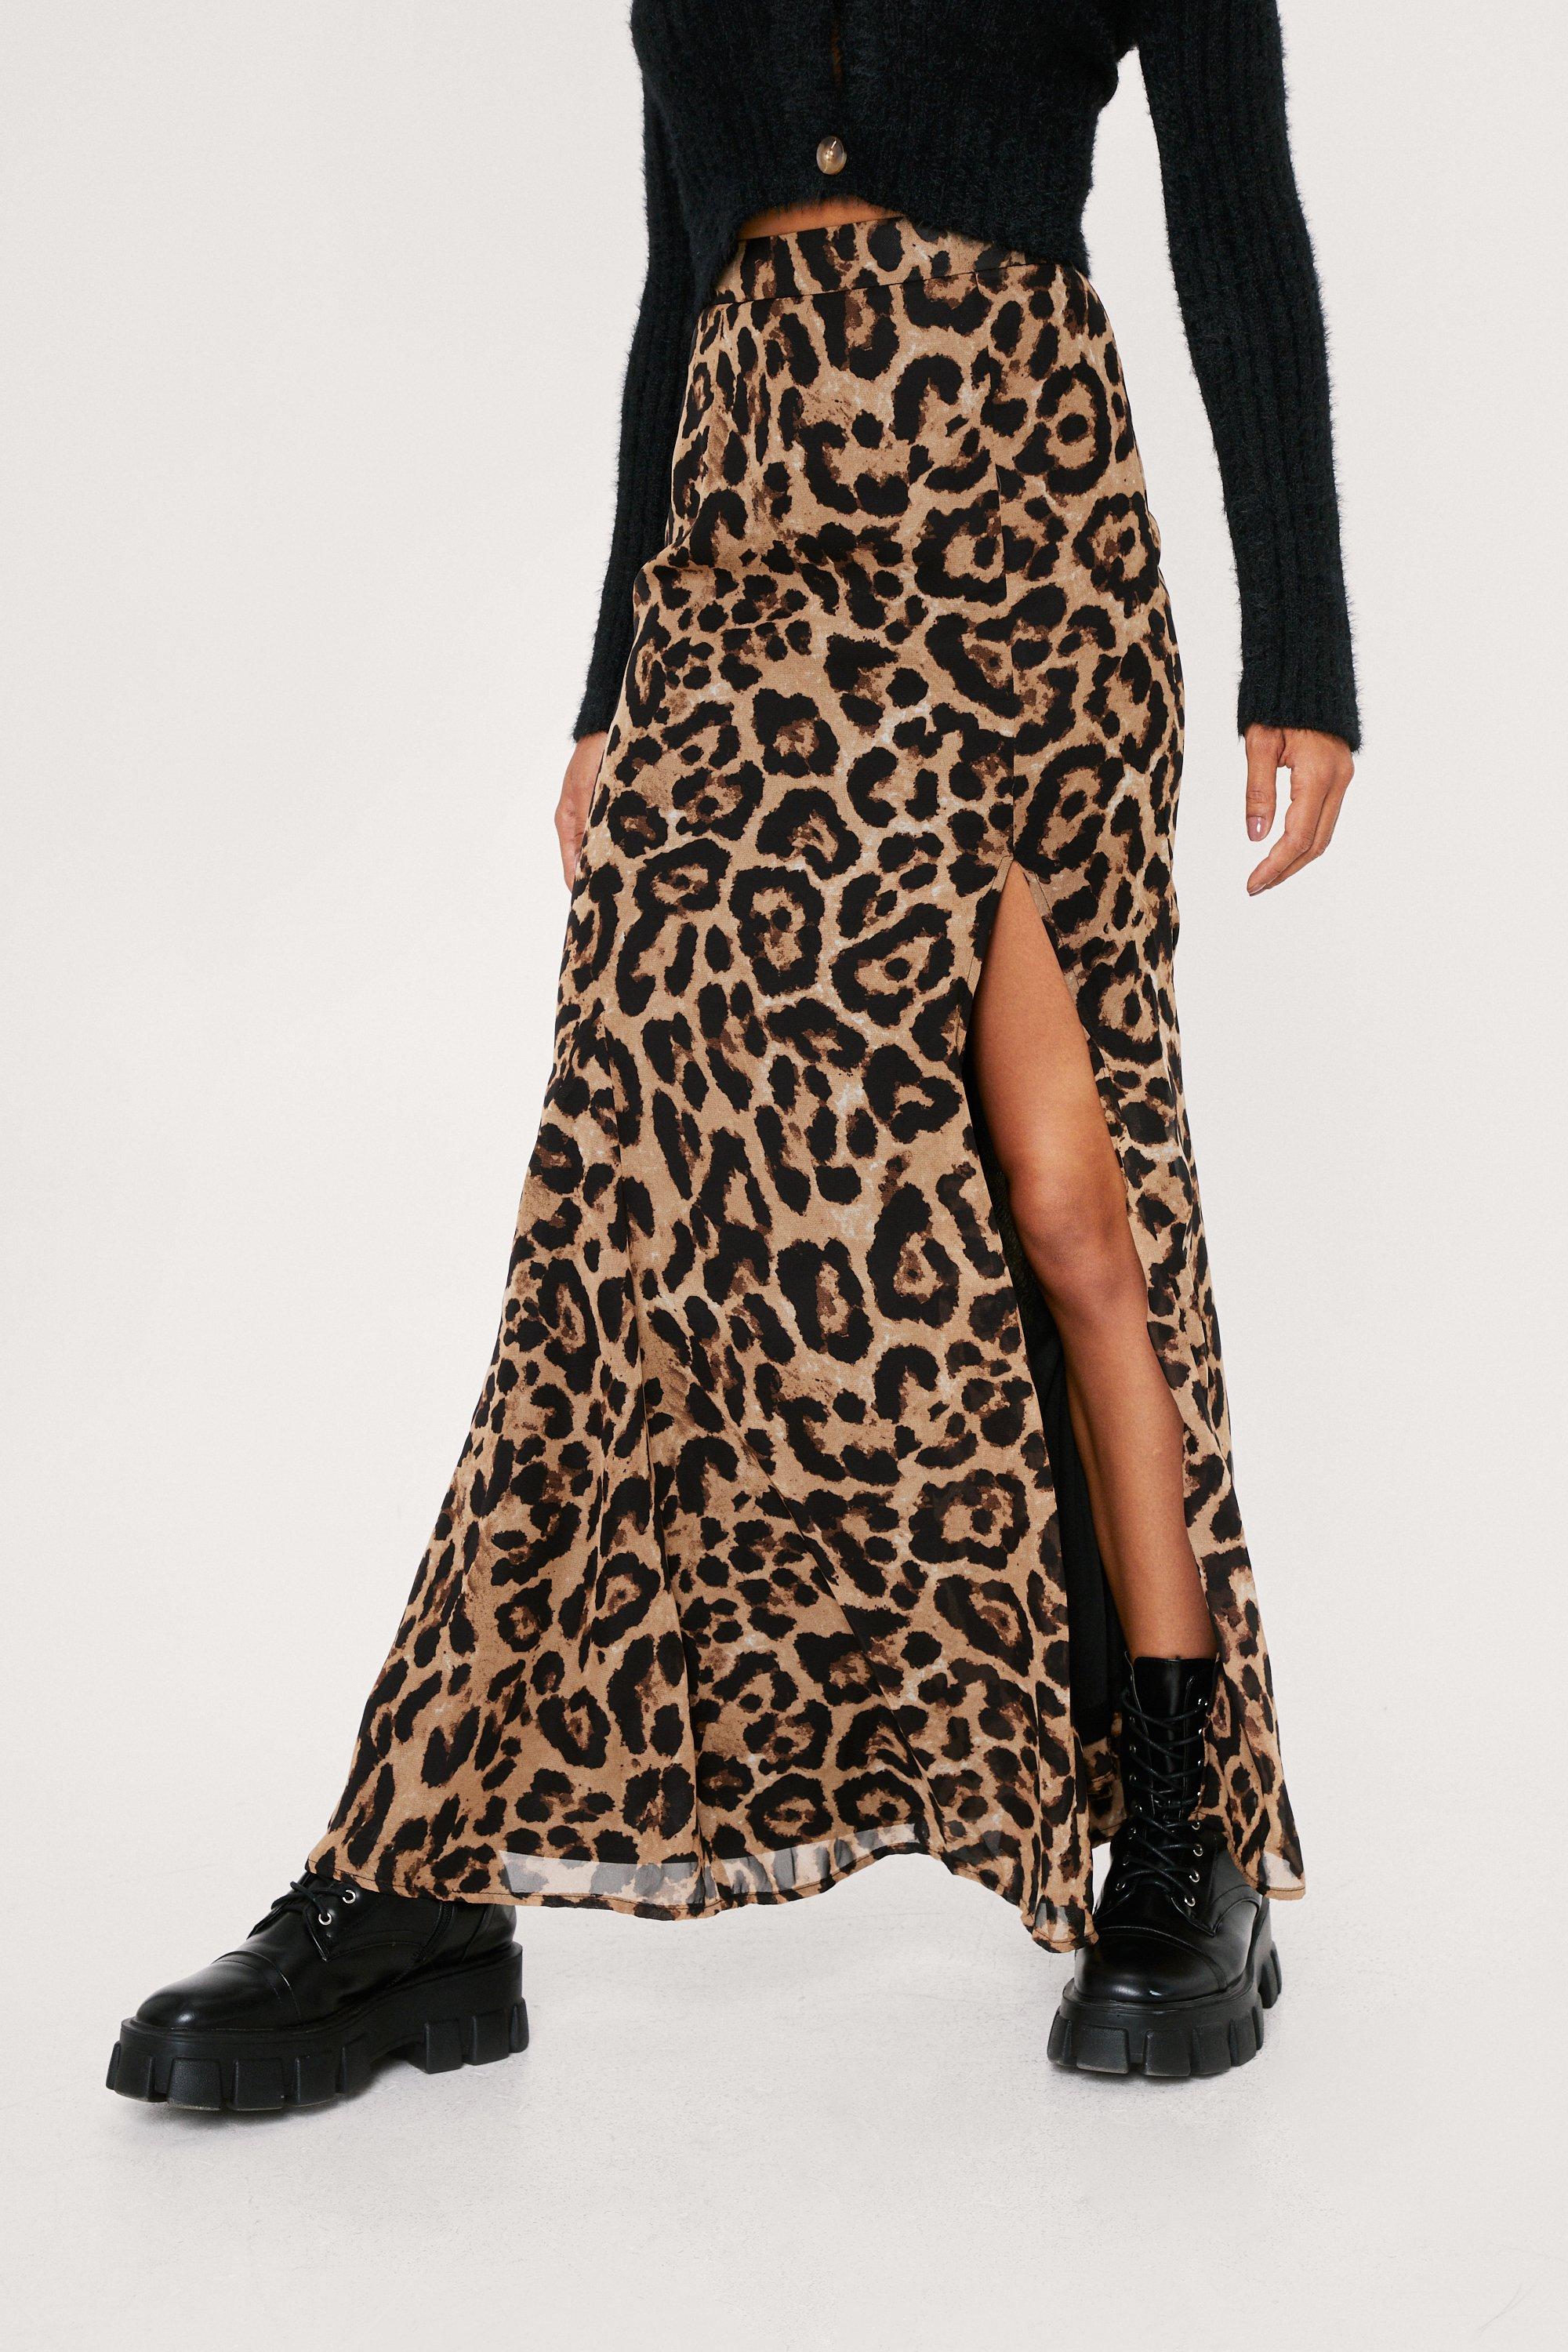 Leopard Print Chiffon Maxi Skirt ...